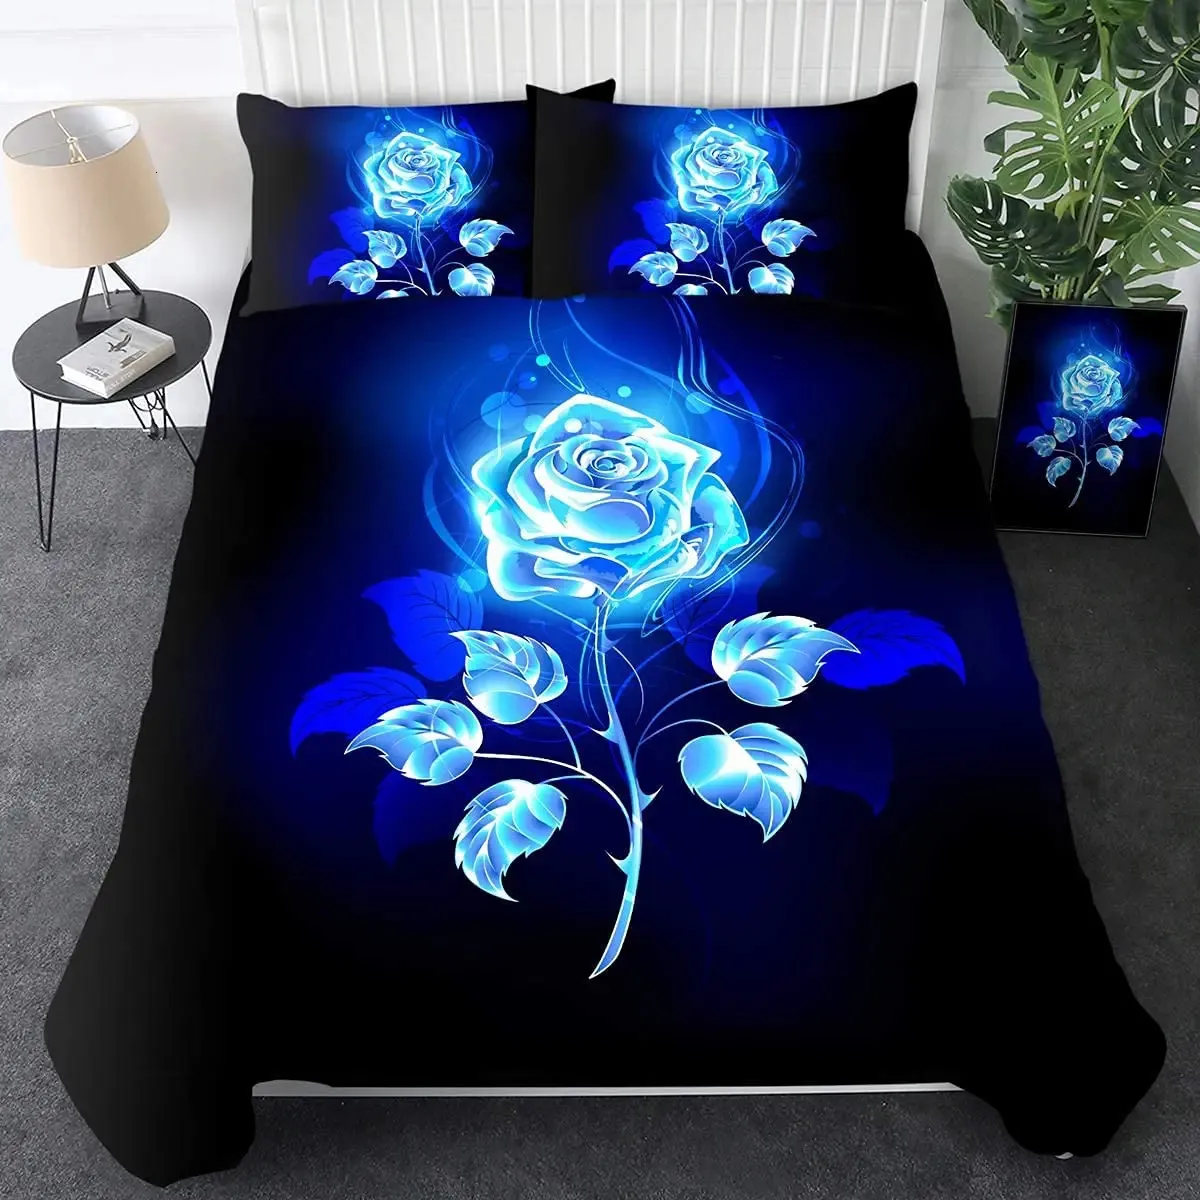 Zestaw pokrywy kołdry różowej z Blue Flame PrintValentines Day Comberter Floral Bedding Setpillowcase 240131